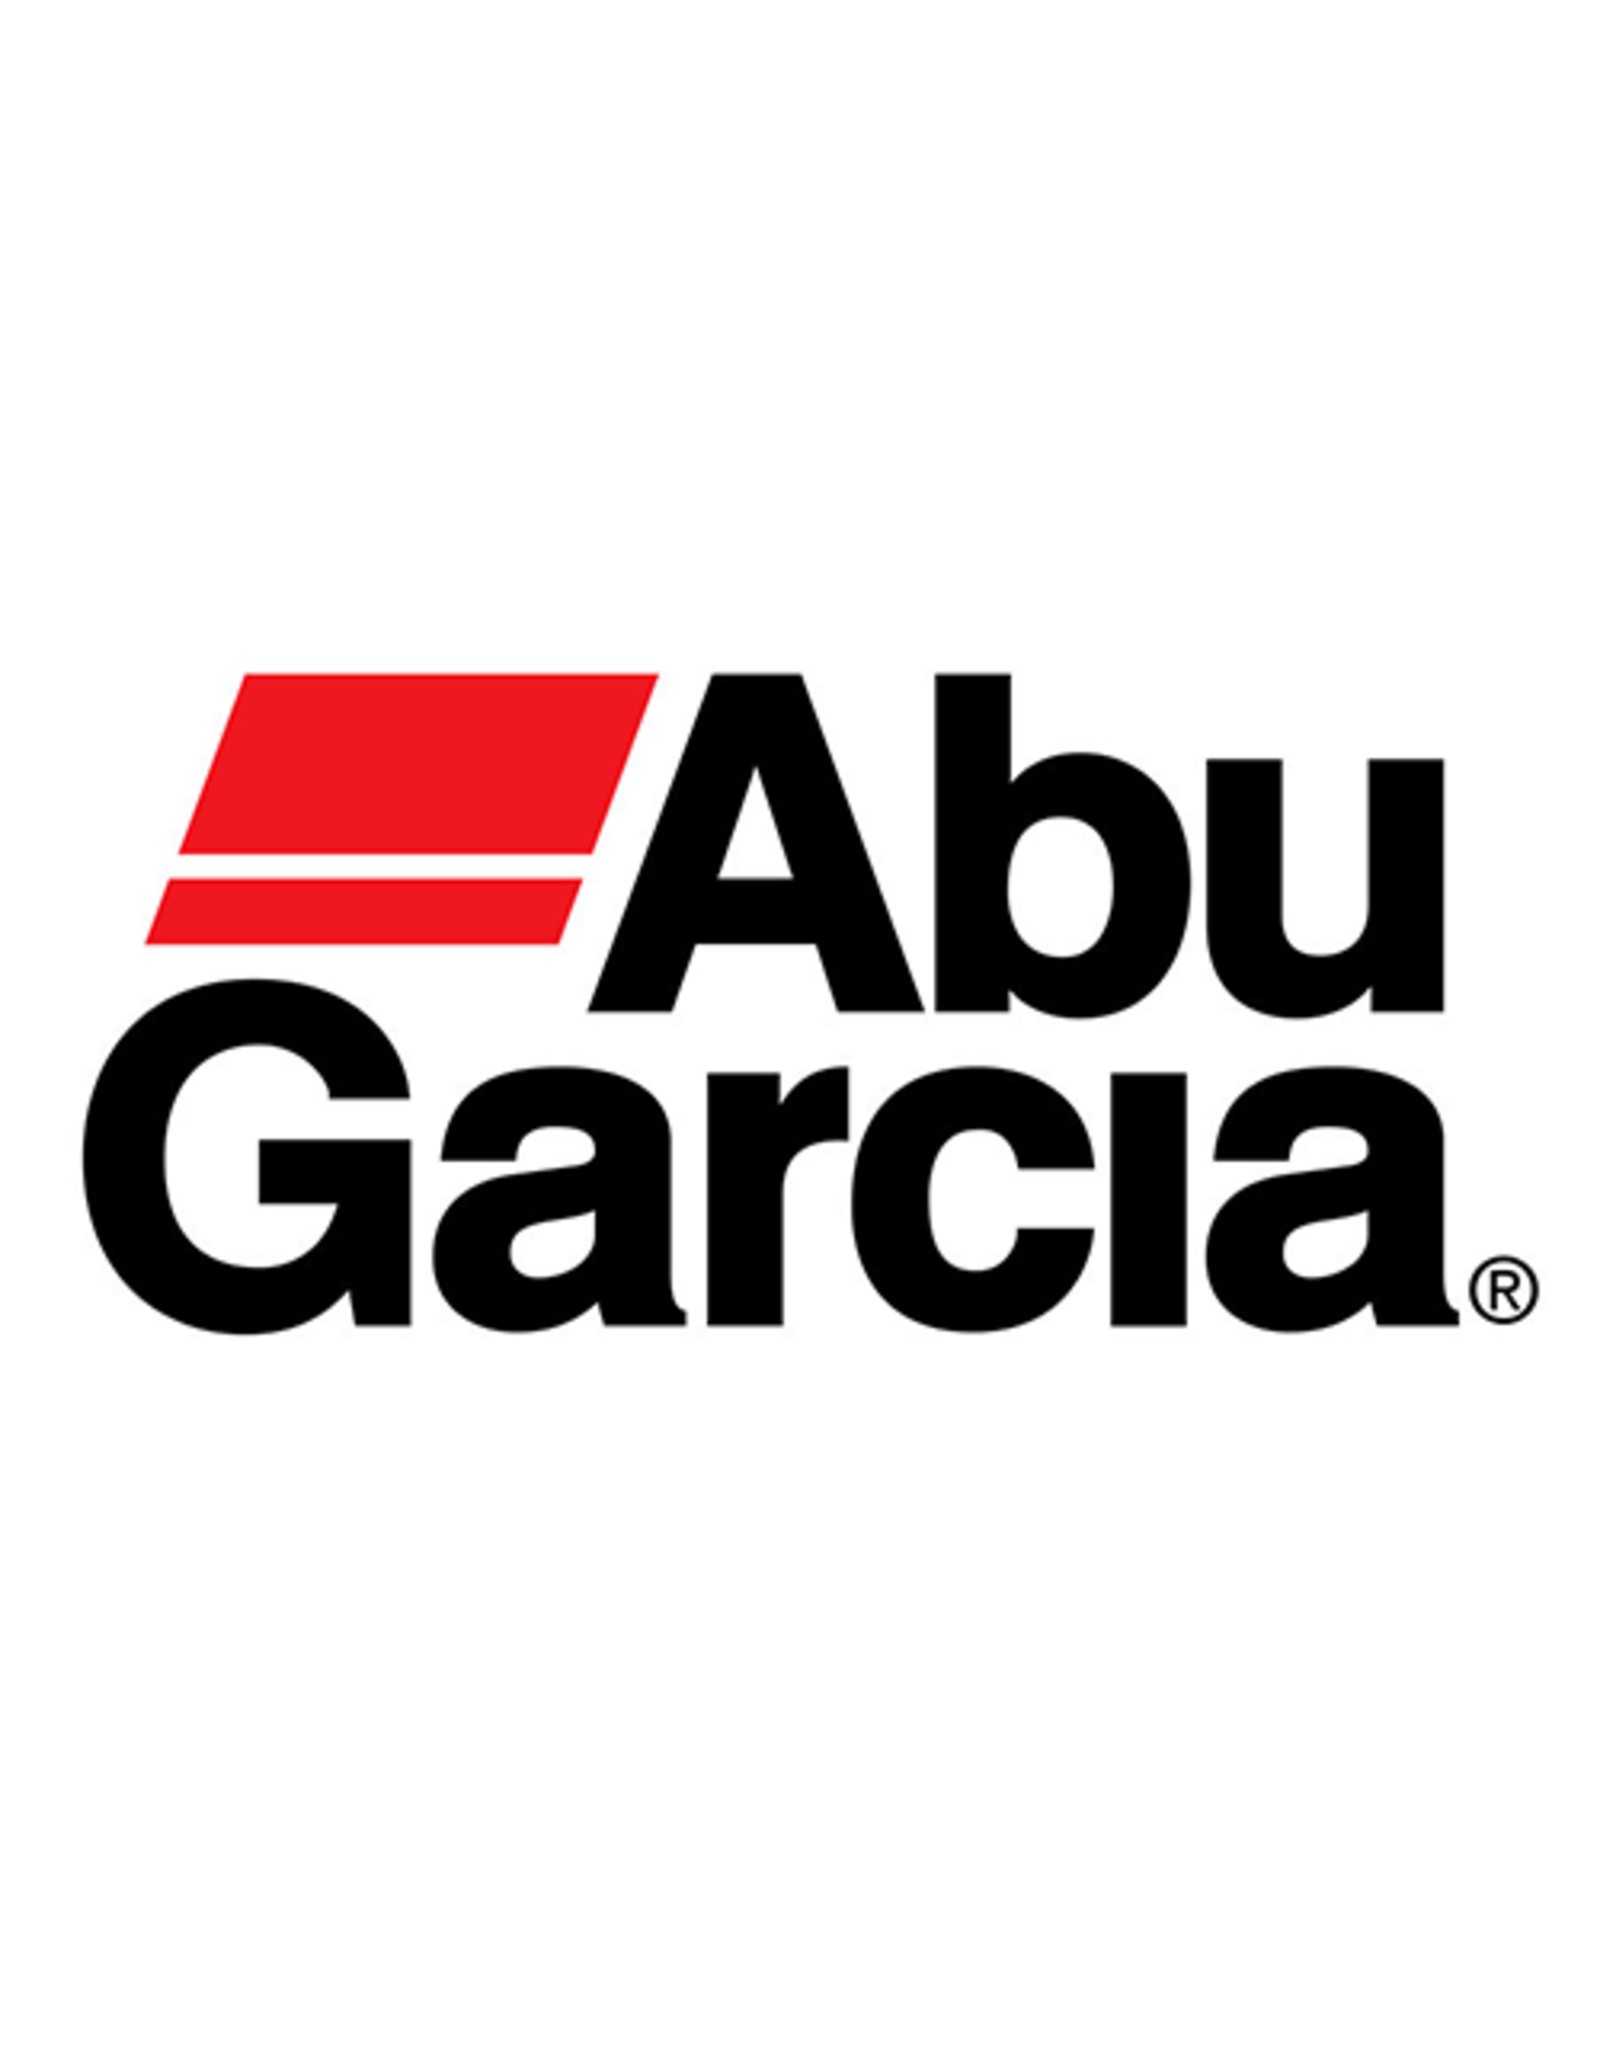 Abu Garcia 20871  DRIVE GEAR